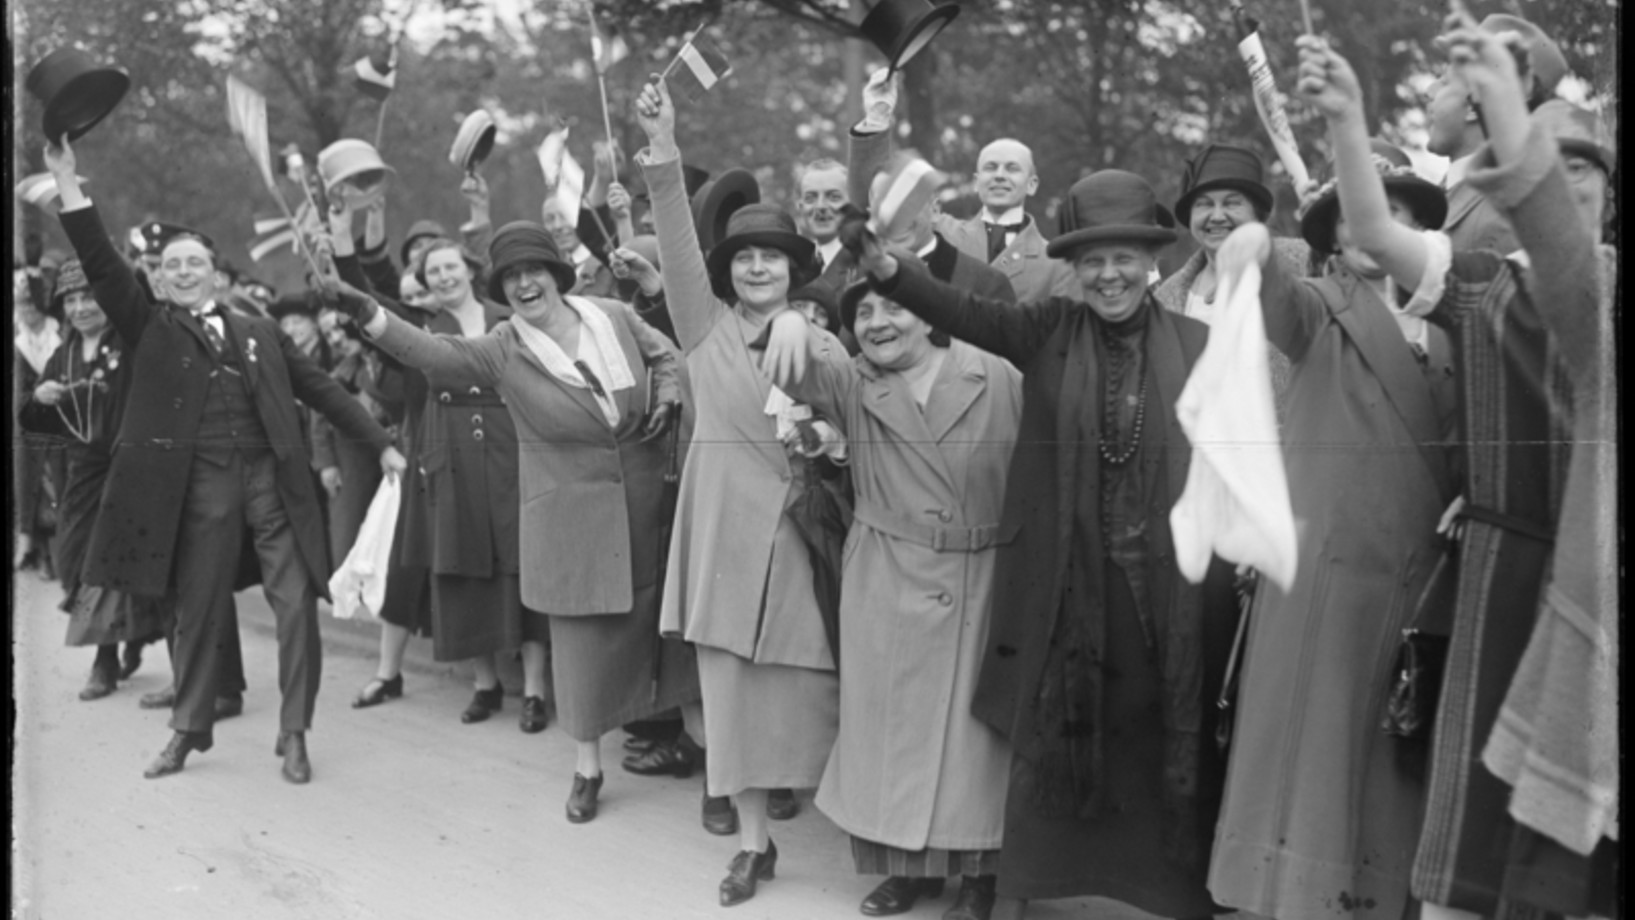 Der Einzug des neuen Reichspräsidenten in Berlin, Ankunft auf dem Bahnhof Heerstrasse, Mai 1925. (Bild: Deutsches Bundesarchiv, Fotograf: Georg Pahl, Bild 102-01400)